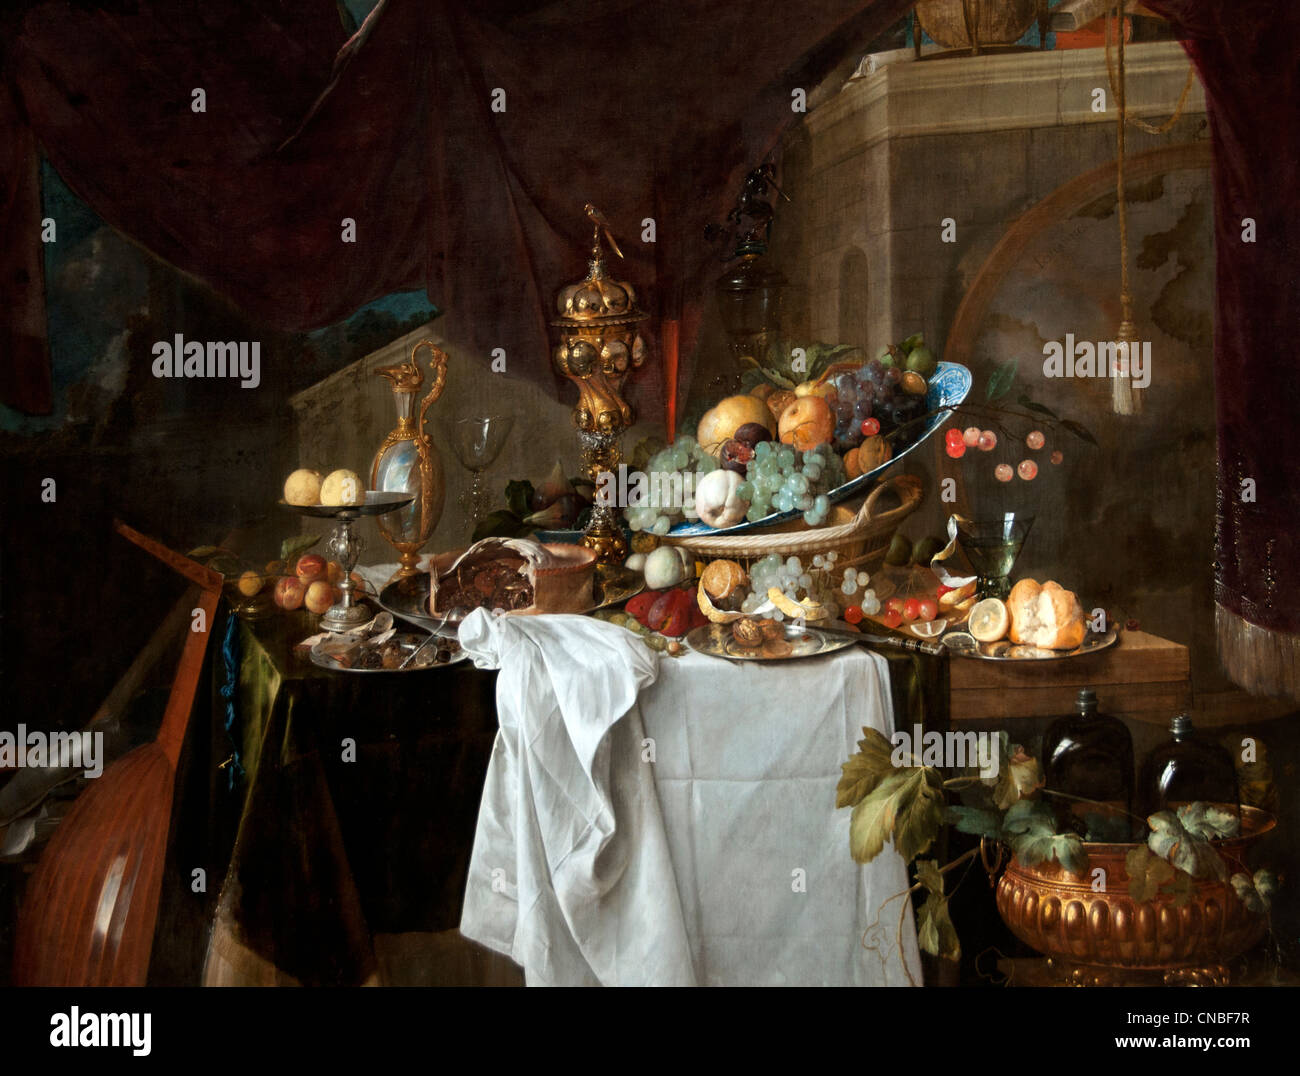 Fruits et riche vaisselle sur une table - des fruits et des plats copieux sur une table 1640 par Jan Davidz De Heem 1606-1683 Pays-Bas Néerlandais Banque D'Images